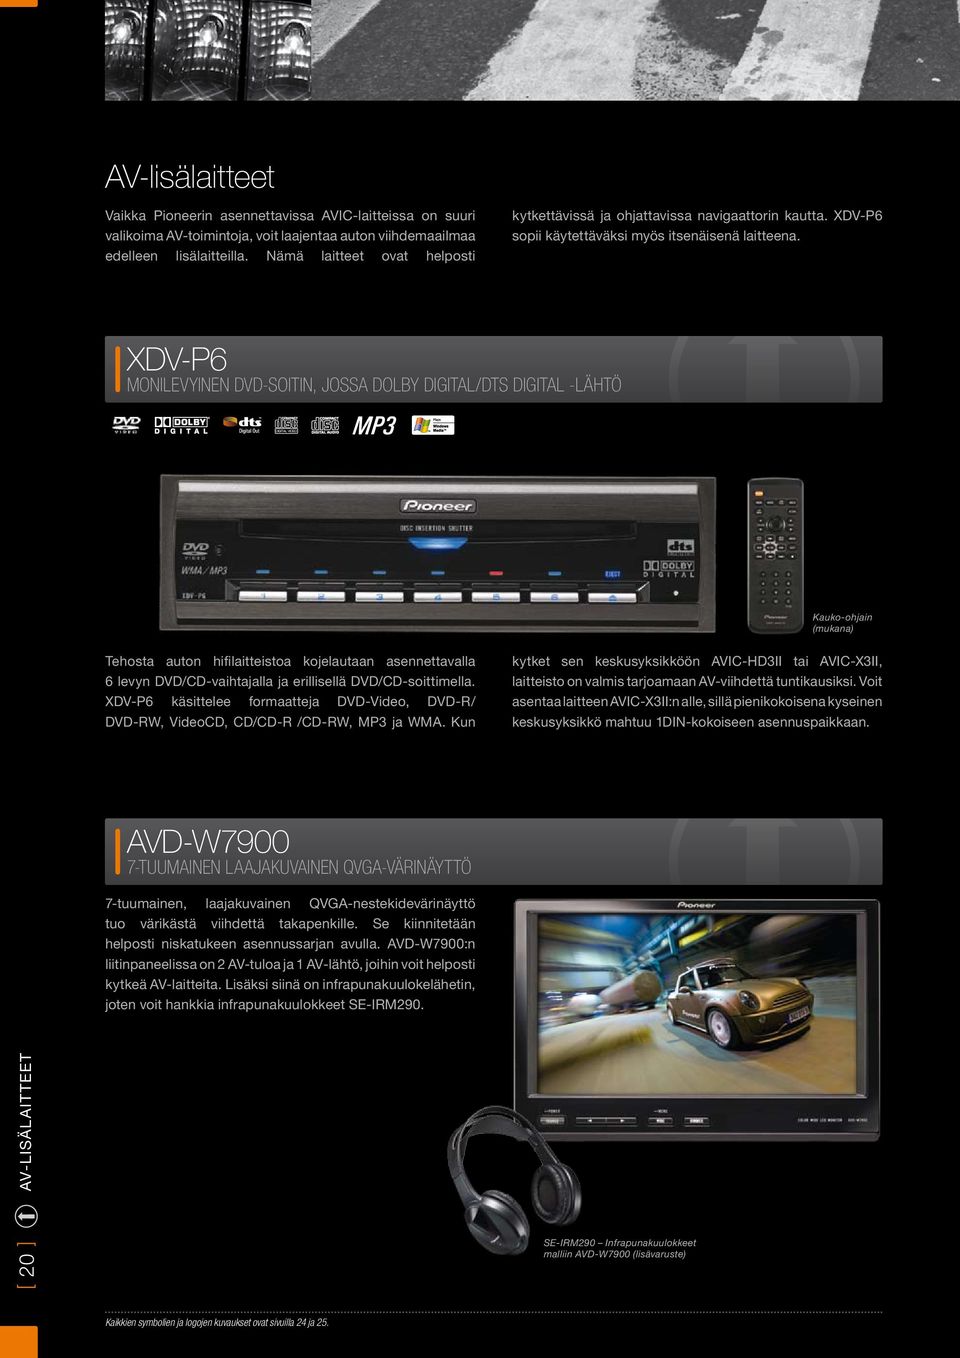 XDV-P6 MONILEVYINEN DVD-SOITIN, JOSSA DOLBY DIGITAL/DTS DIGITAL -LÄHTÖ Kauko-ohjain (mukana) Tehosta auton hifilaitteistoa kojelautaan asennettavalla 6 levyn DVD/CD-vaihtajalla ja erillisellä